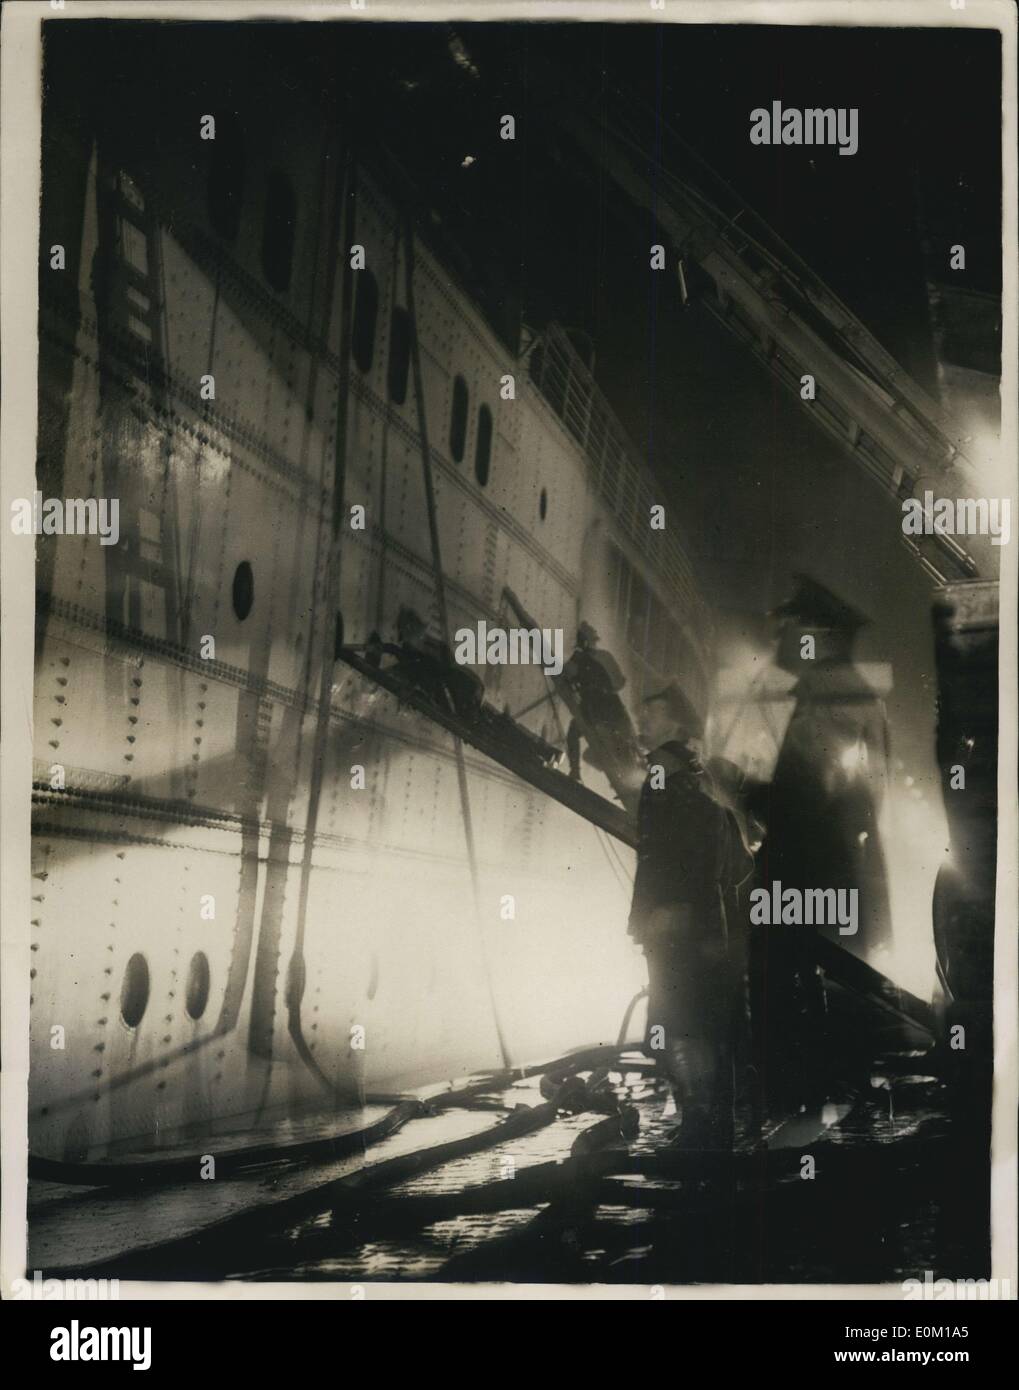 Gen 26, 1953 - L'Imperatrice del Canada bruciata-Capsizes in Liverpool Dock: foto mostra la scena come vigile del fuoco e i funzionari combattere il fuoco che ha bruciato e provocato il capovolgimento del liner Imperatrice del Canada nel dock di Liverpool. Foto Stock